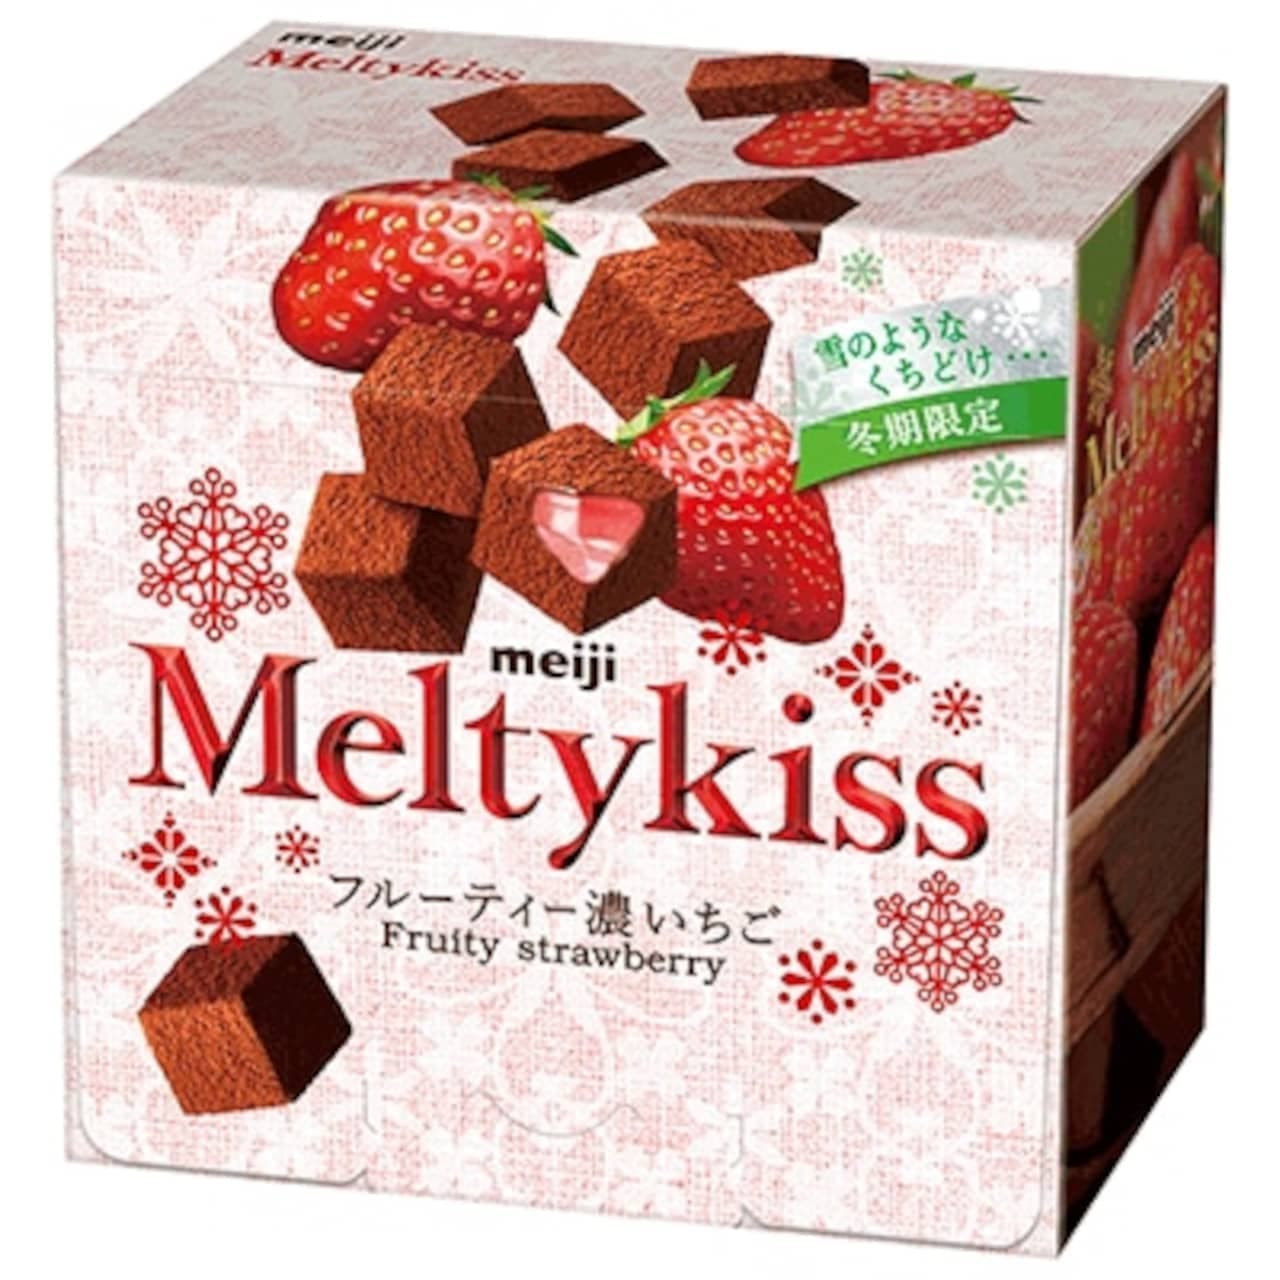 Meiji "Melty Kiss